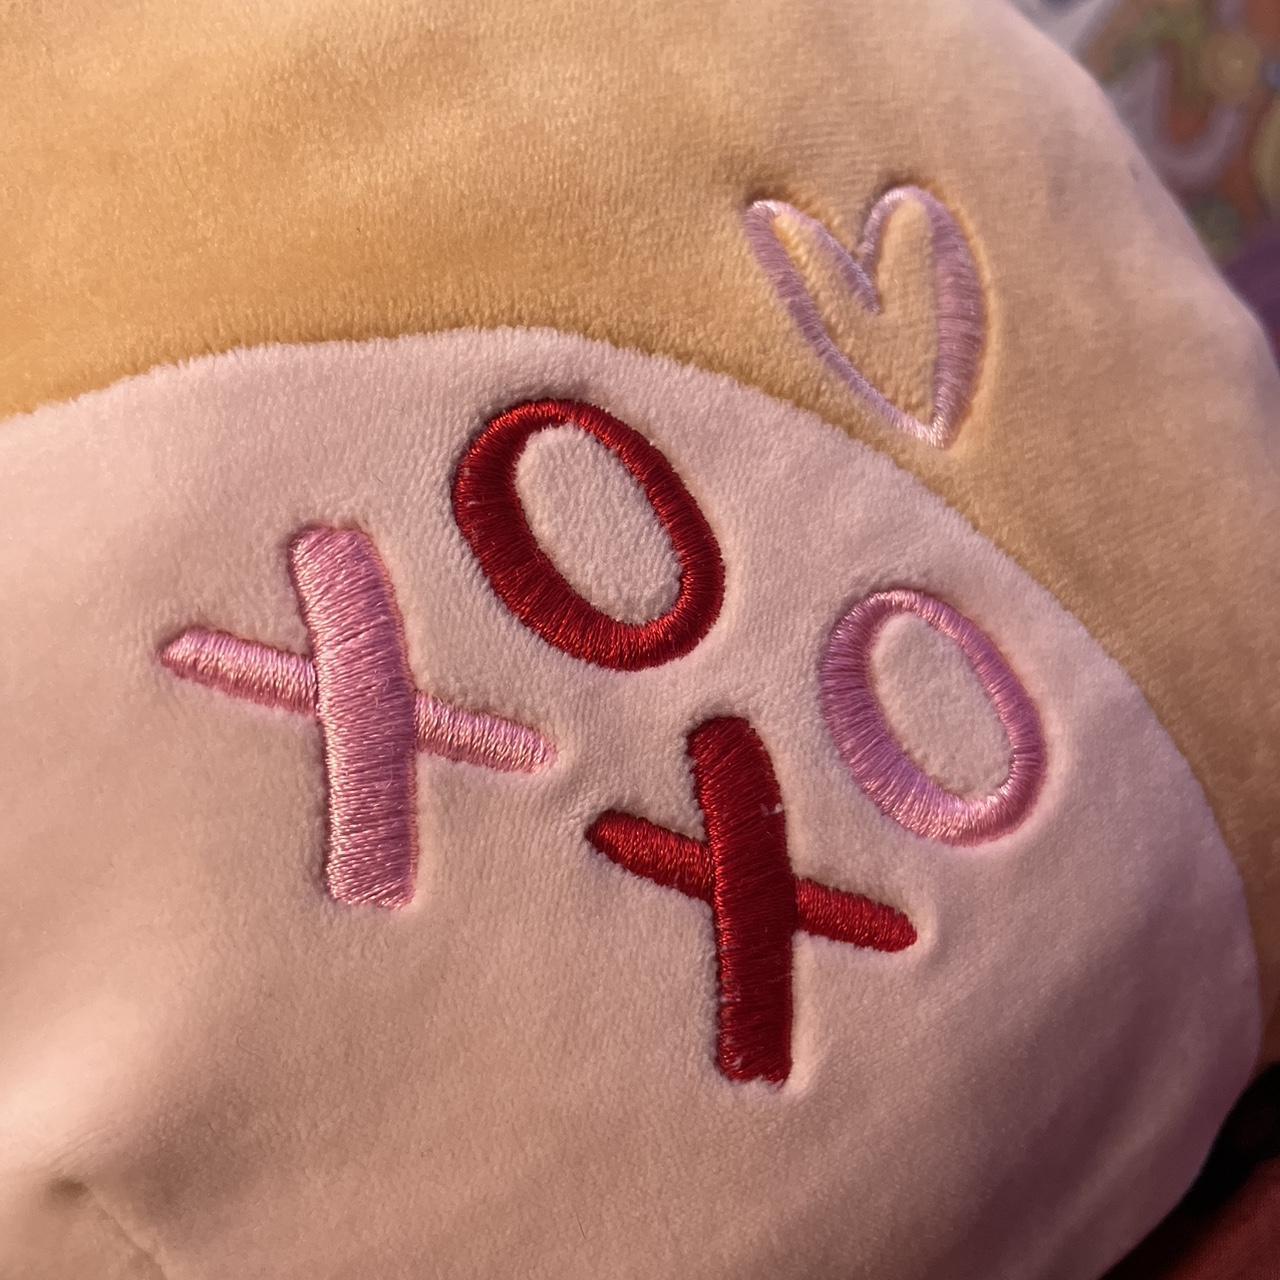 Squishmallow Shiba Inu Dog XOXO HEART Valentines Limited Edition RARE